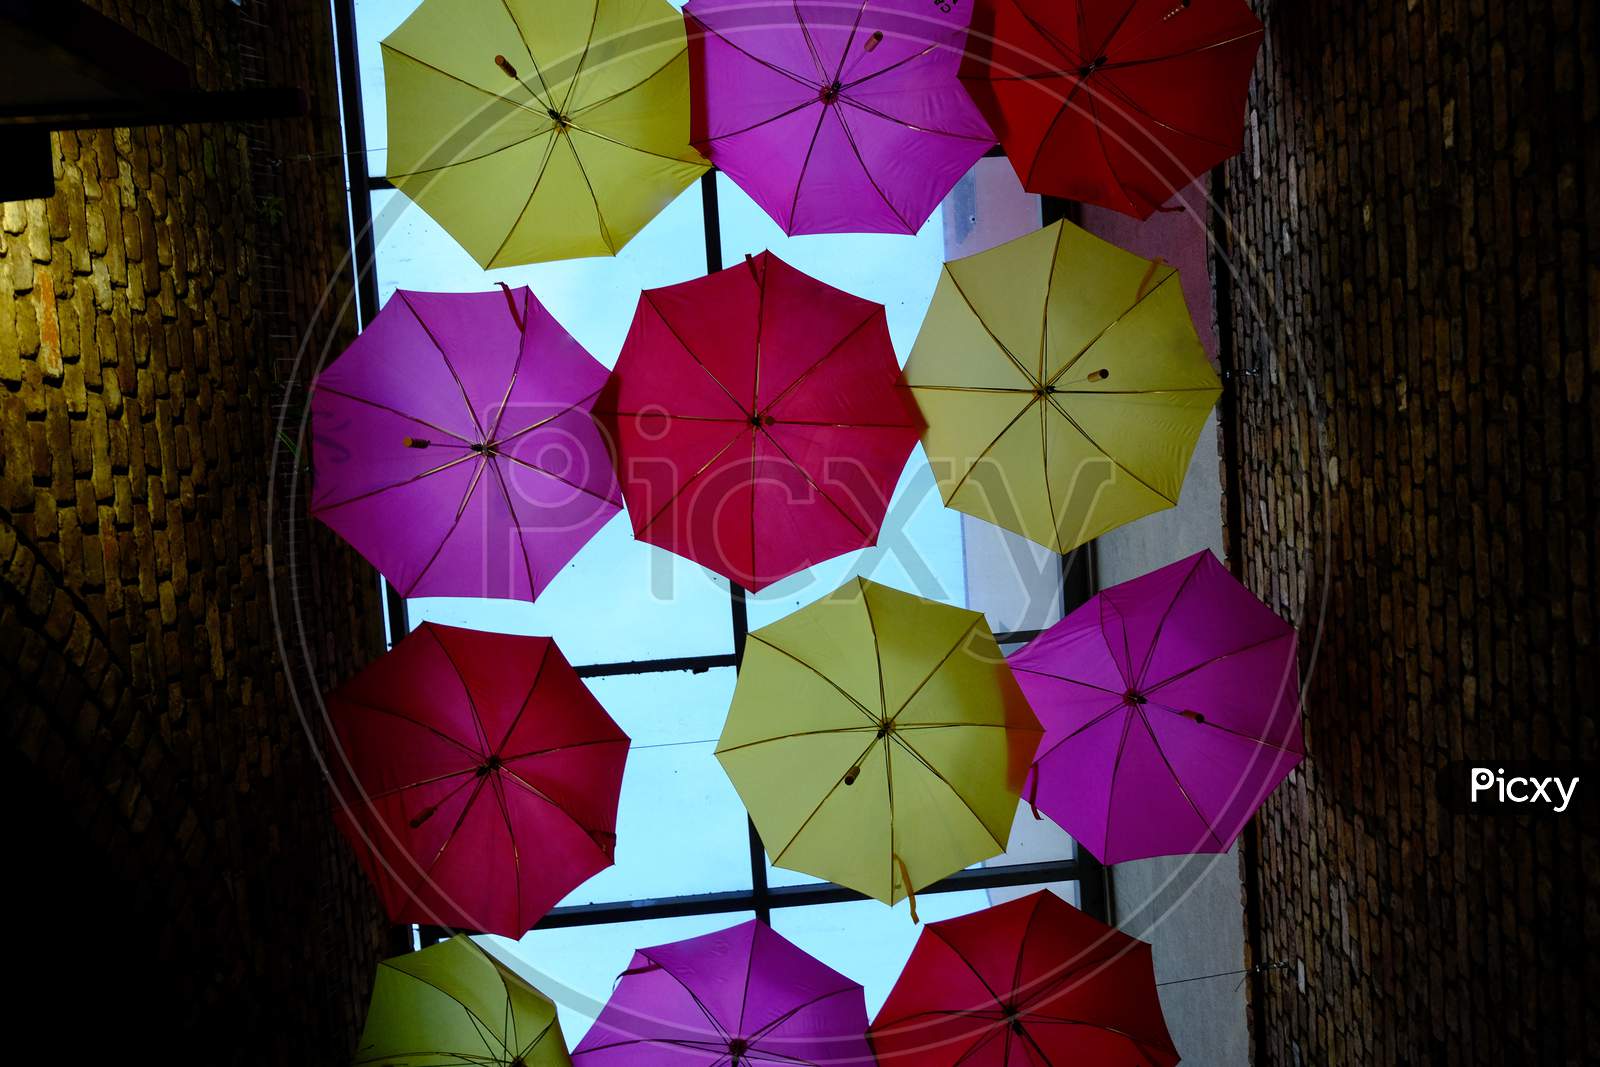 Colourful umbrellas in a moody alleyway